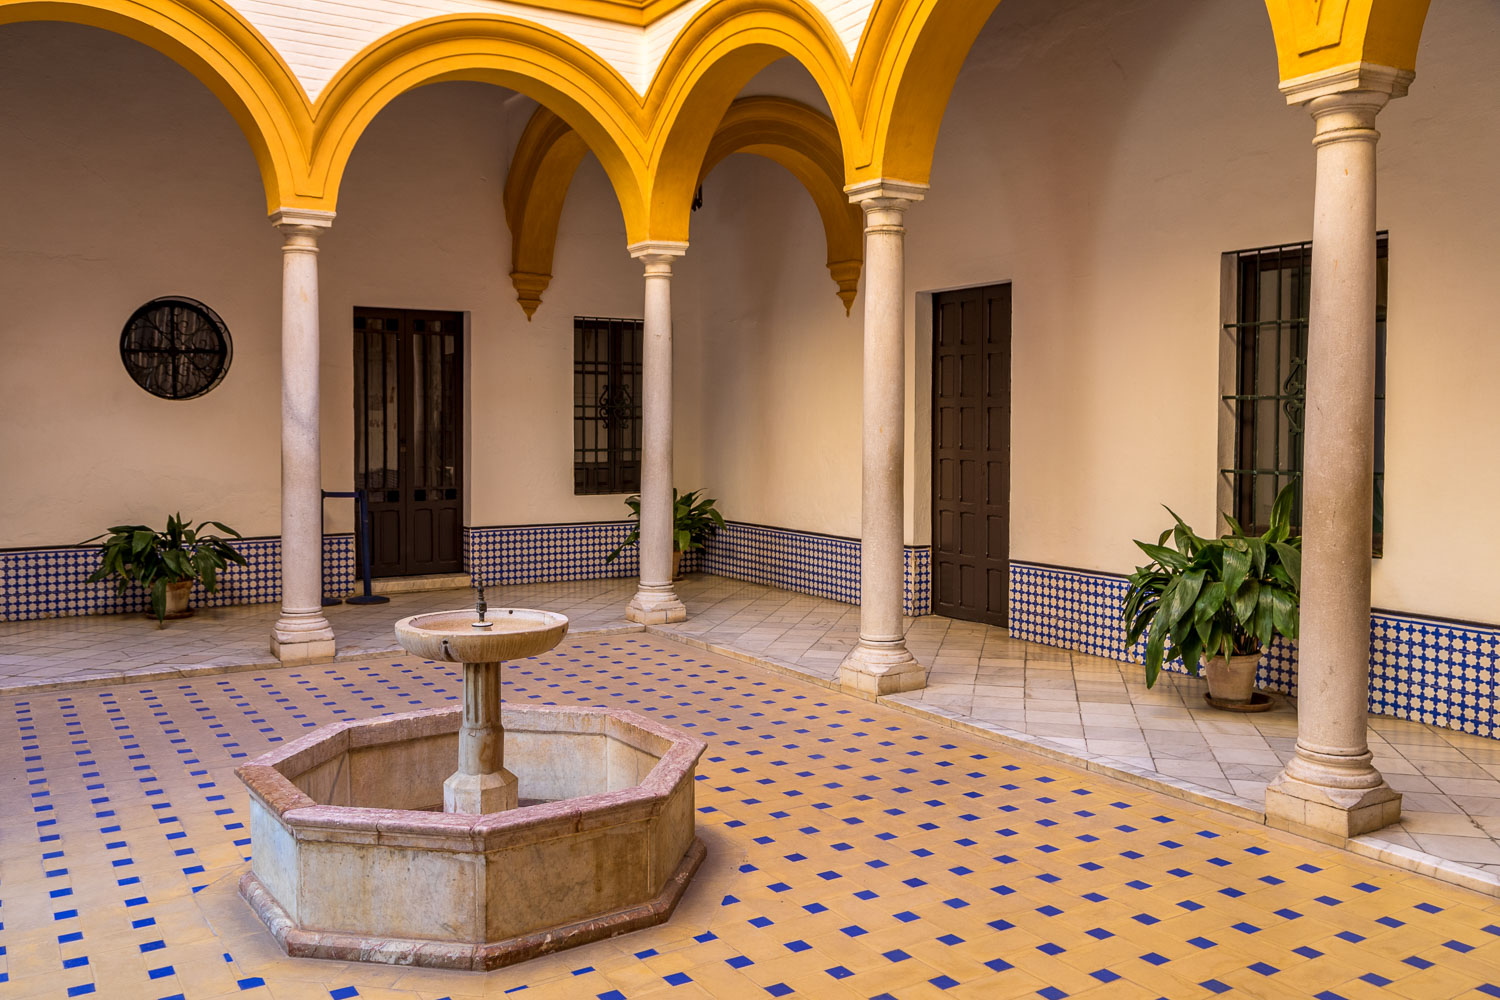 Royal Alcázar, Seville